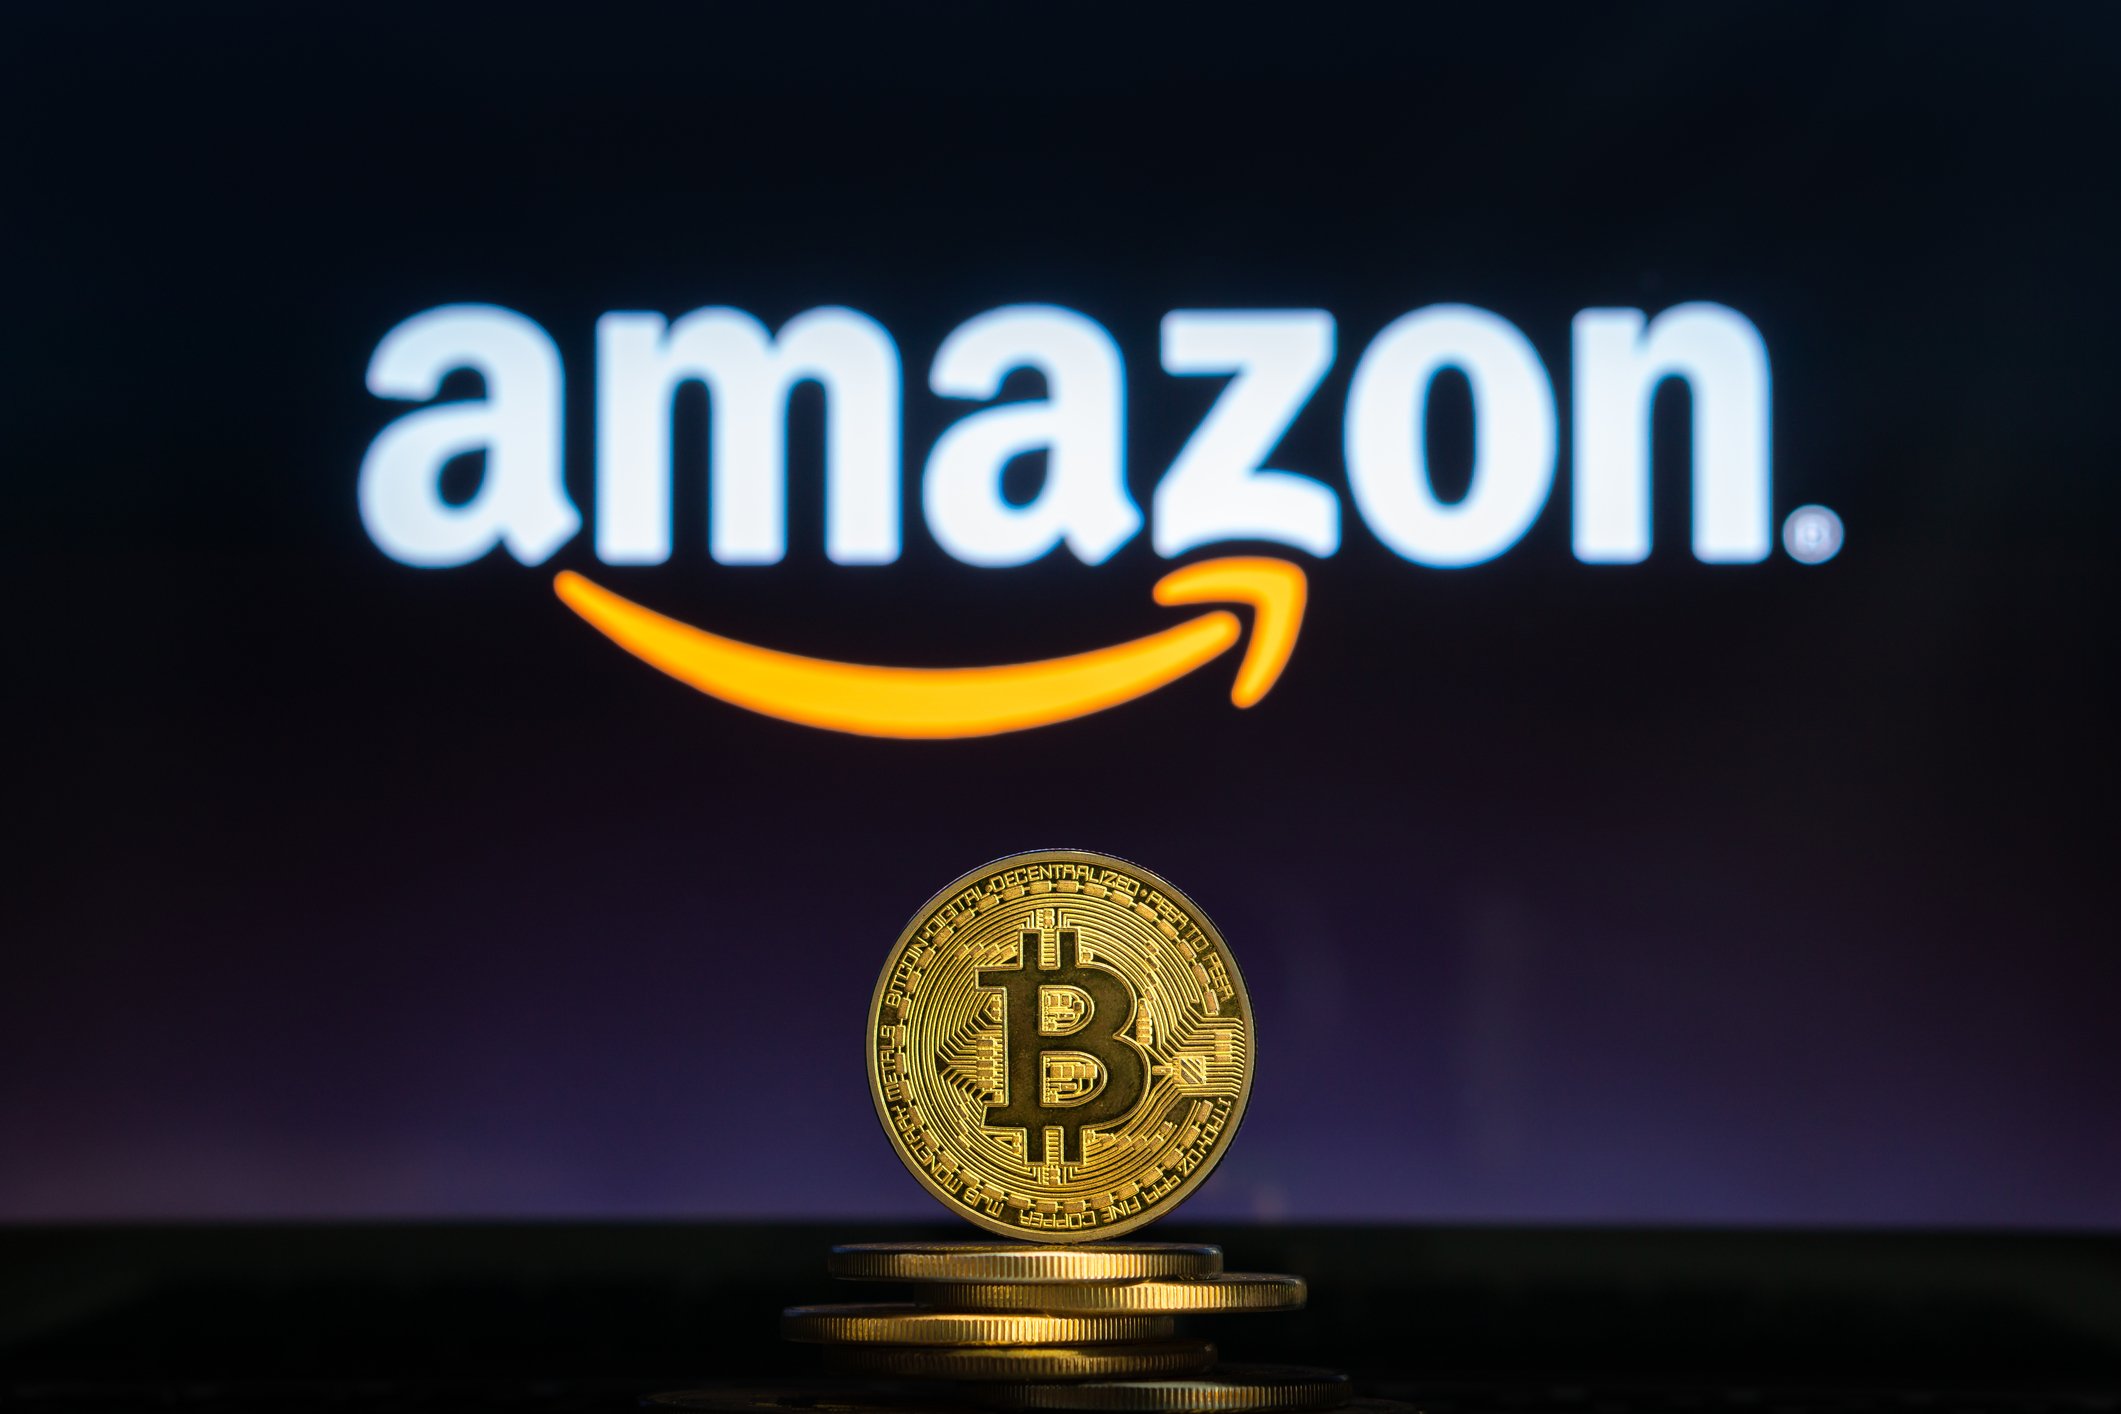 Amazon prevede di accettare pagamenti in Bitcoin entro fine anno, afferma un insider